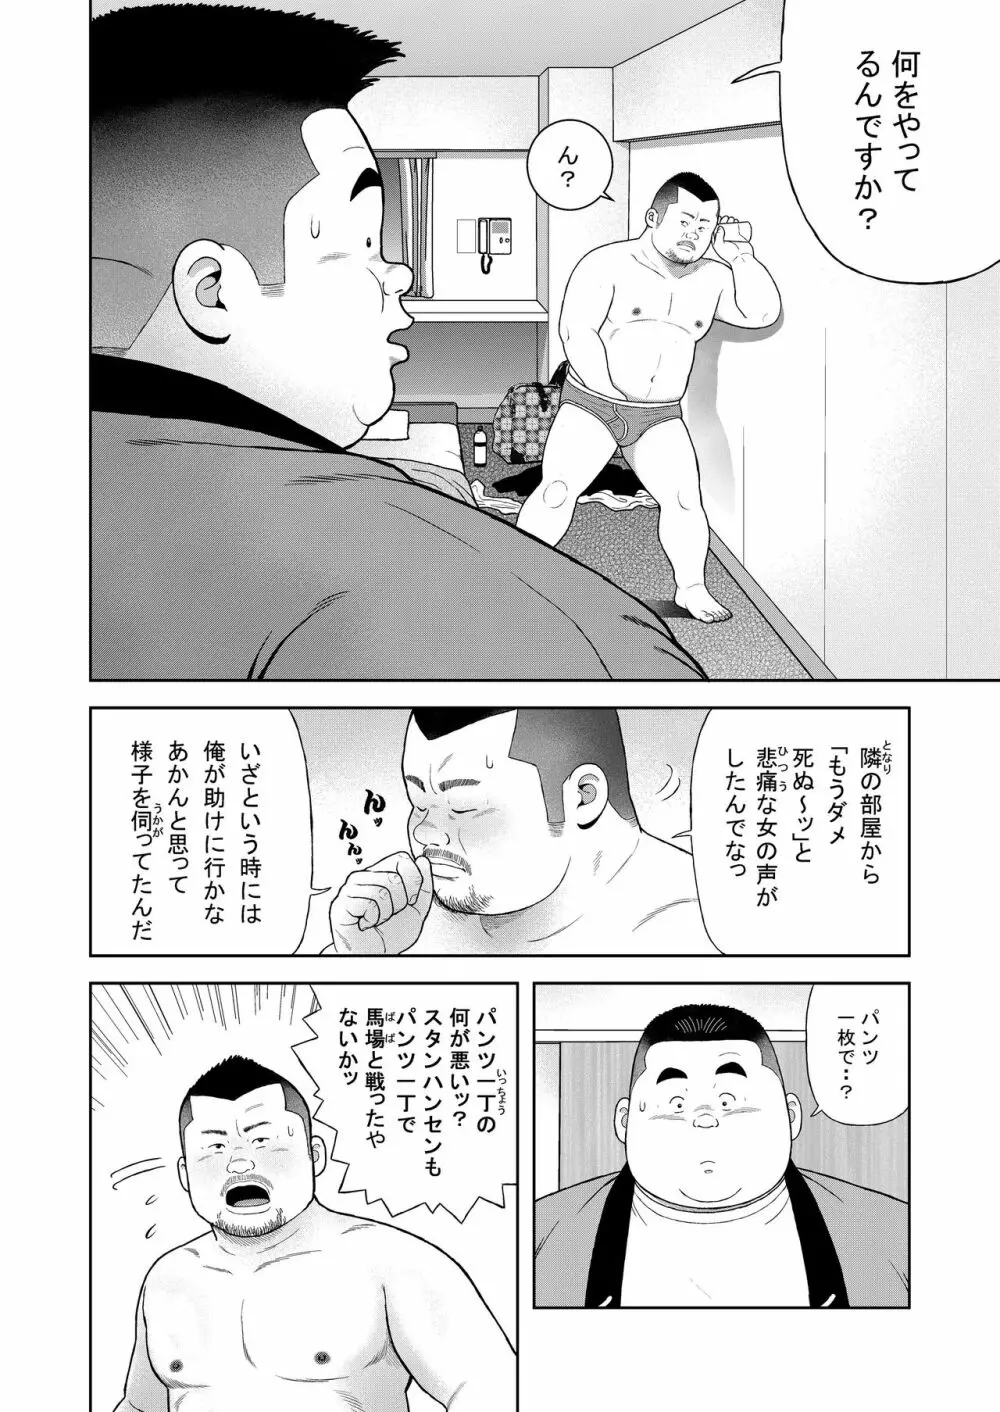 くの湯 四発め 芸人の性 - page8